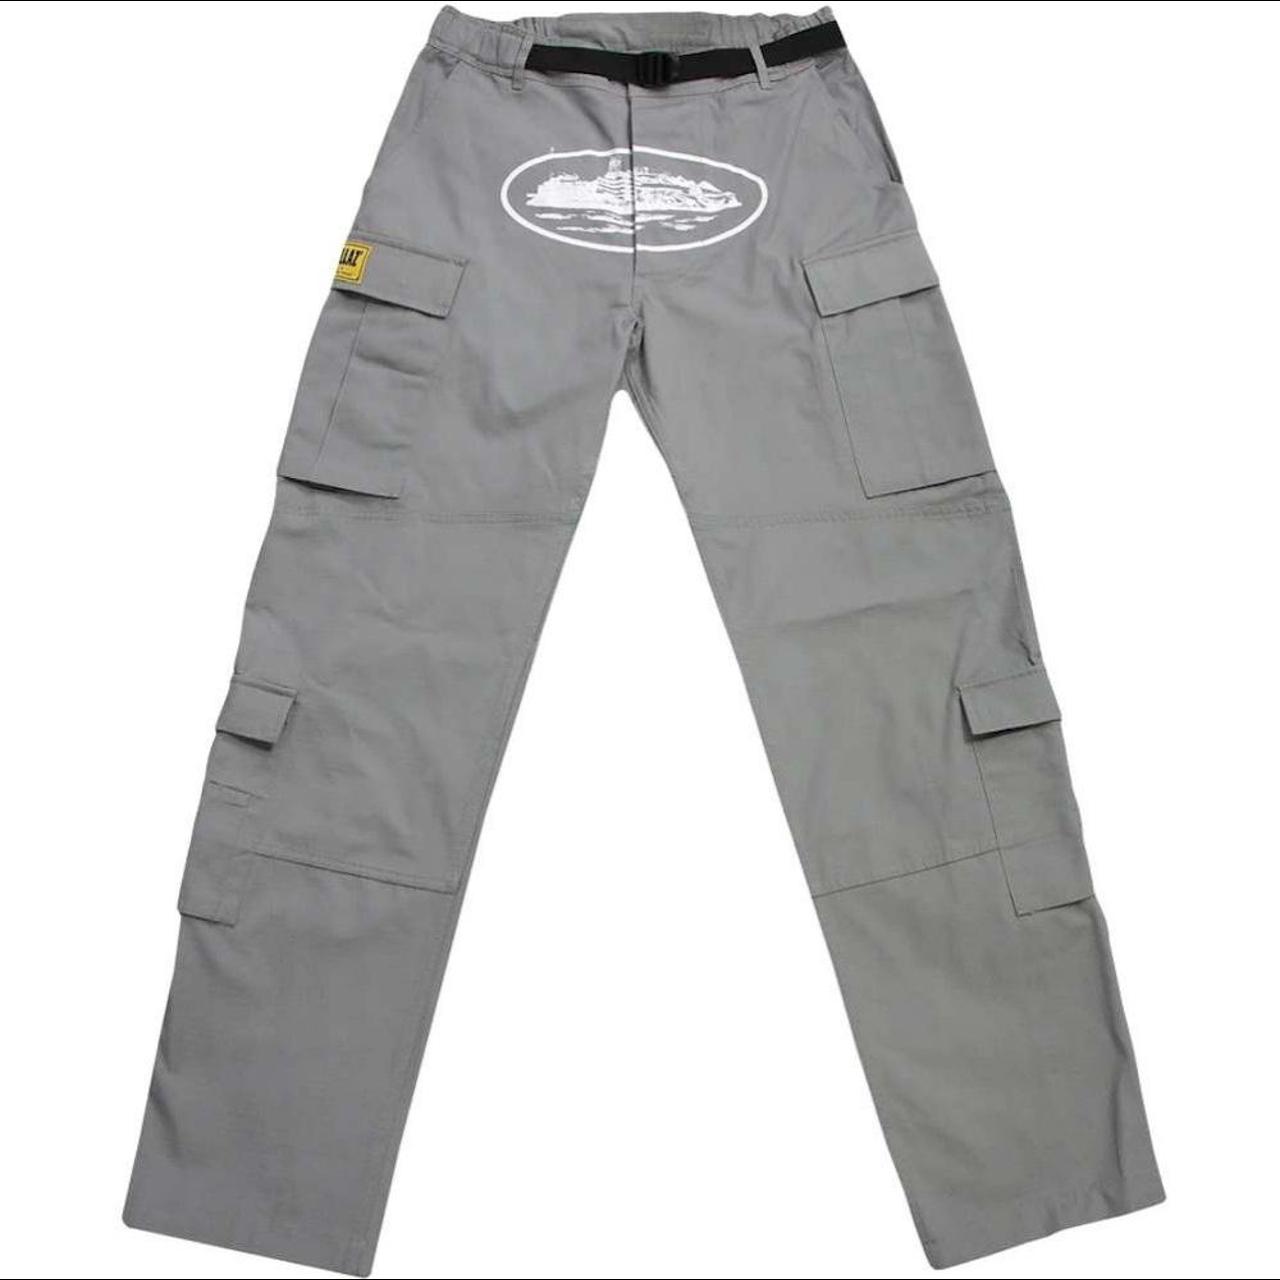 Cortiez Alcatraz stone Cargo Pants Size S-Xl... - Depop